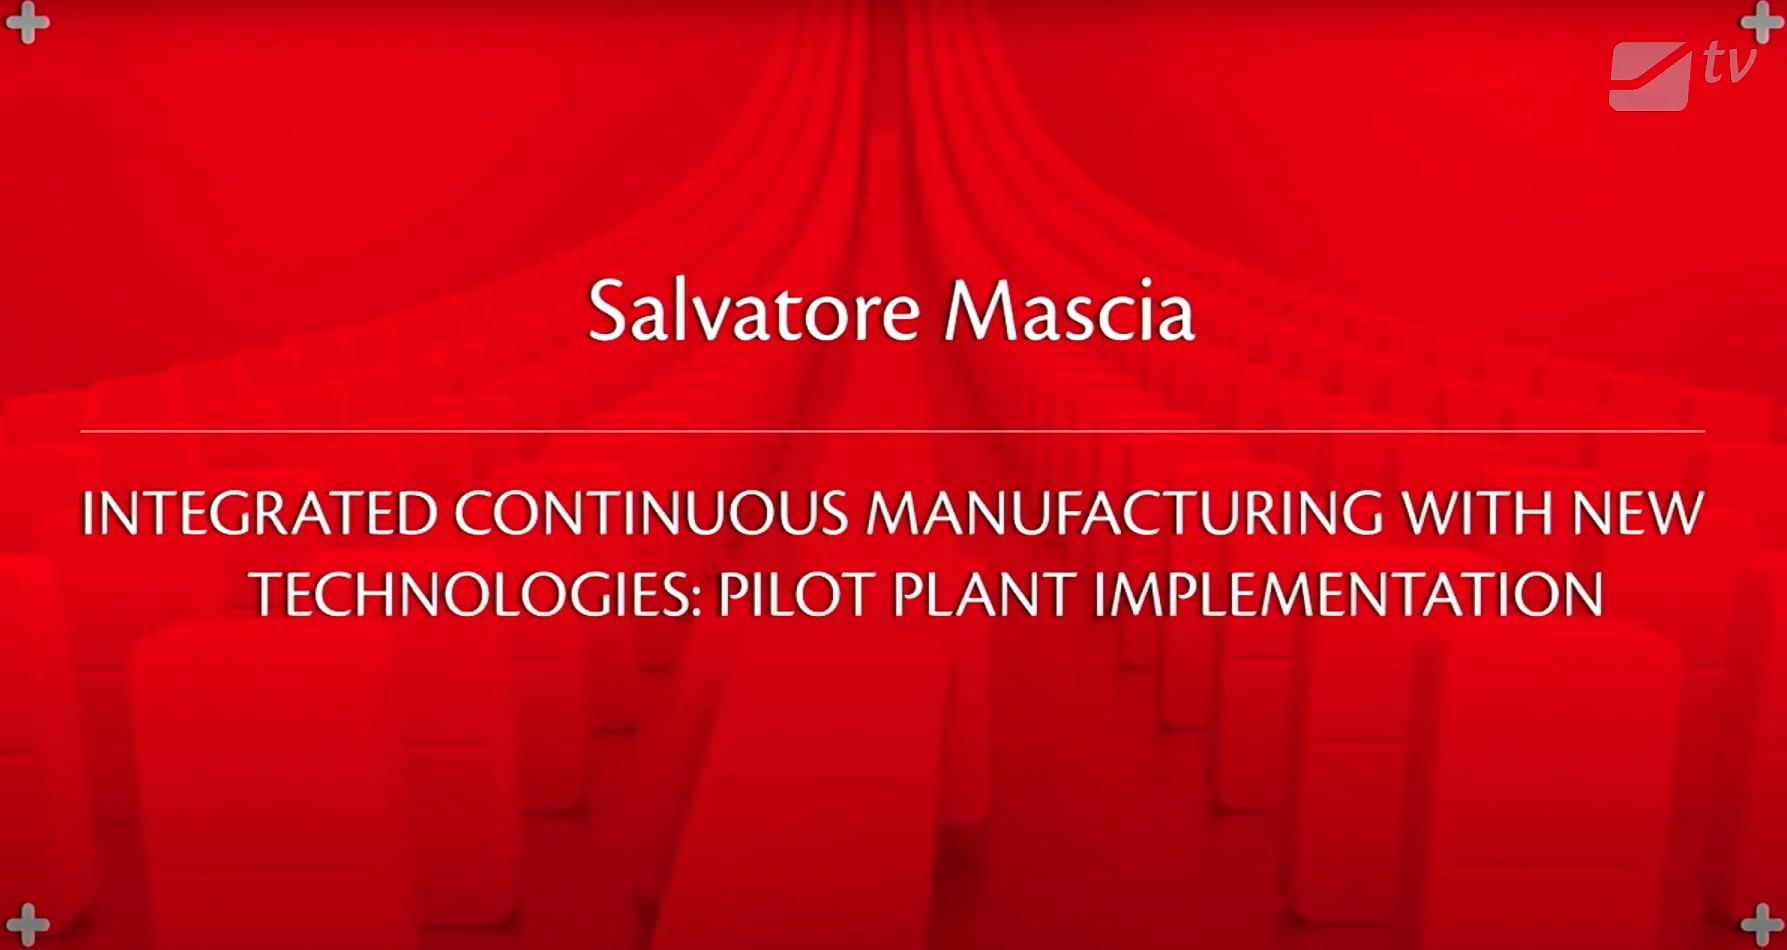 Salvatore Mascia's Speech at IMA's Can't Stop the Future